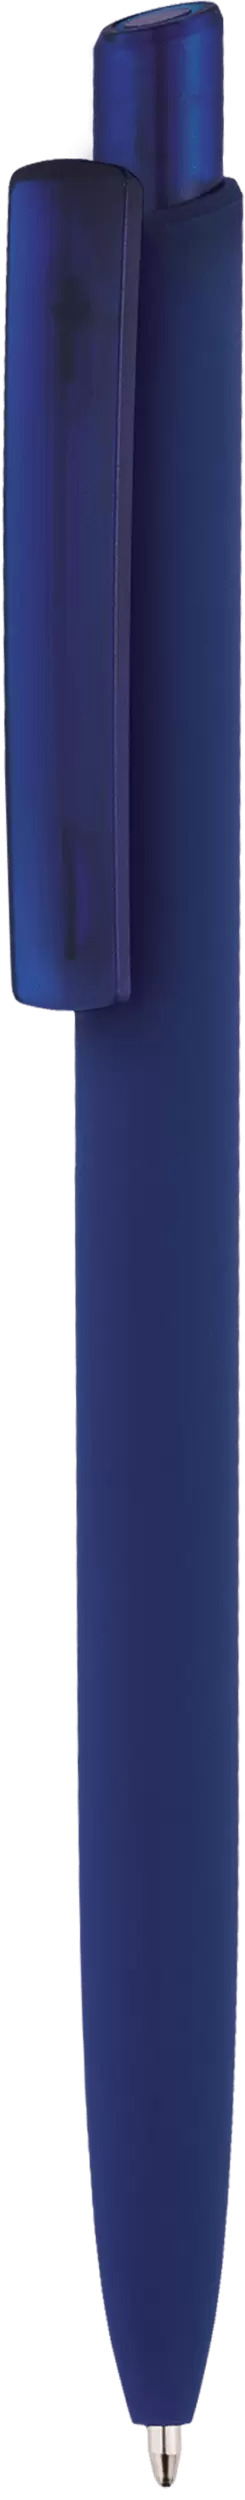 Ручка POLO SOFT FROST Темно-синяя 1306-14